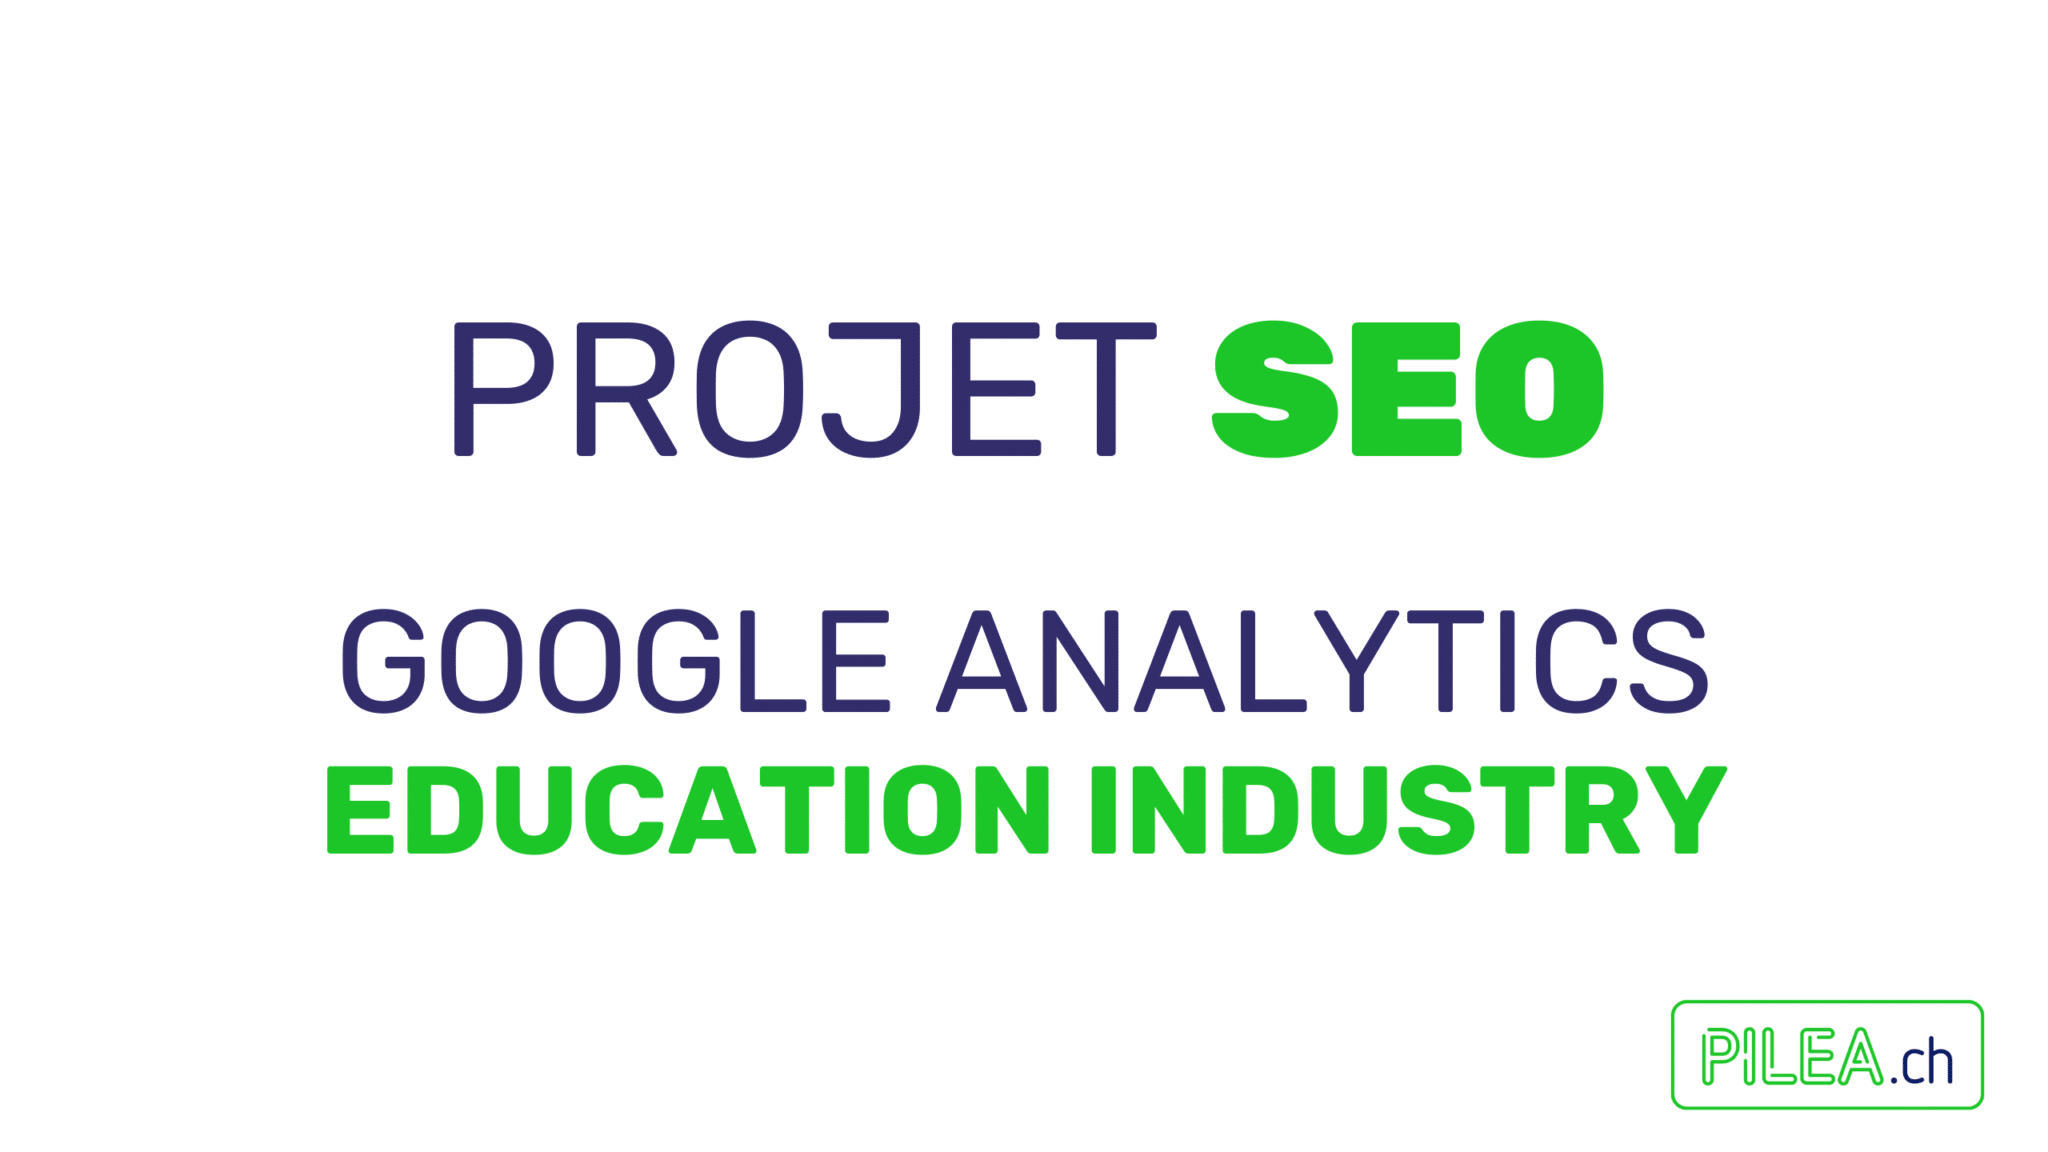 Projet SEO et Google Analytics 4 par Isaline Muelhauser, Consultante SEO pour une Haut Ecole de renommée internationale